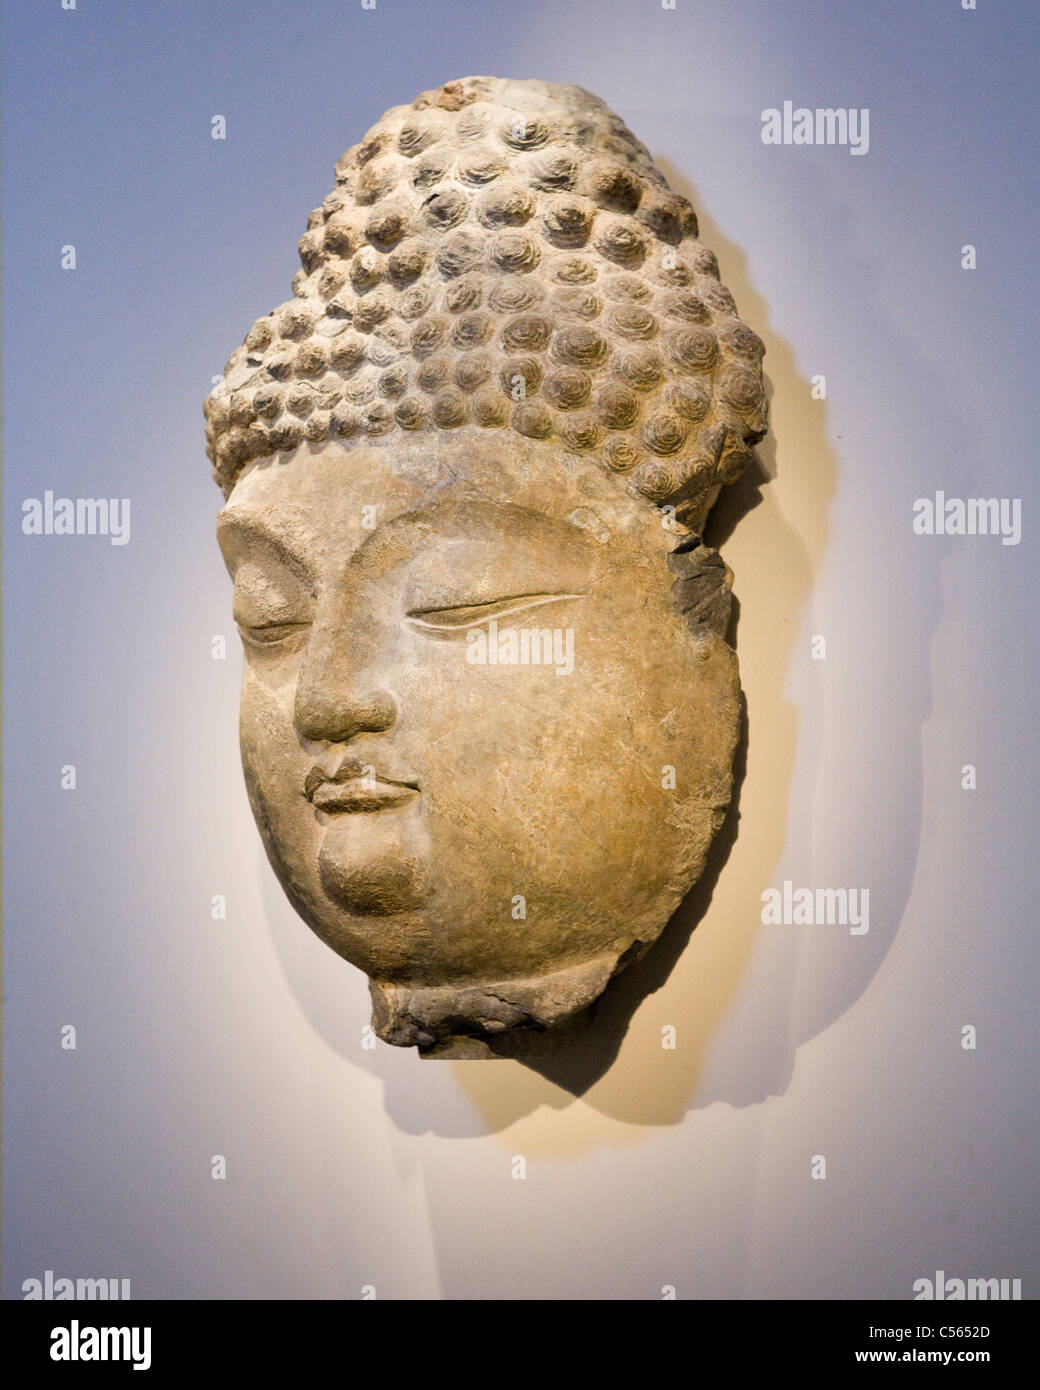 Stein-Skulptur des Buddha an die Wand hängen Stockfoto